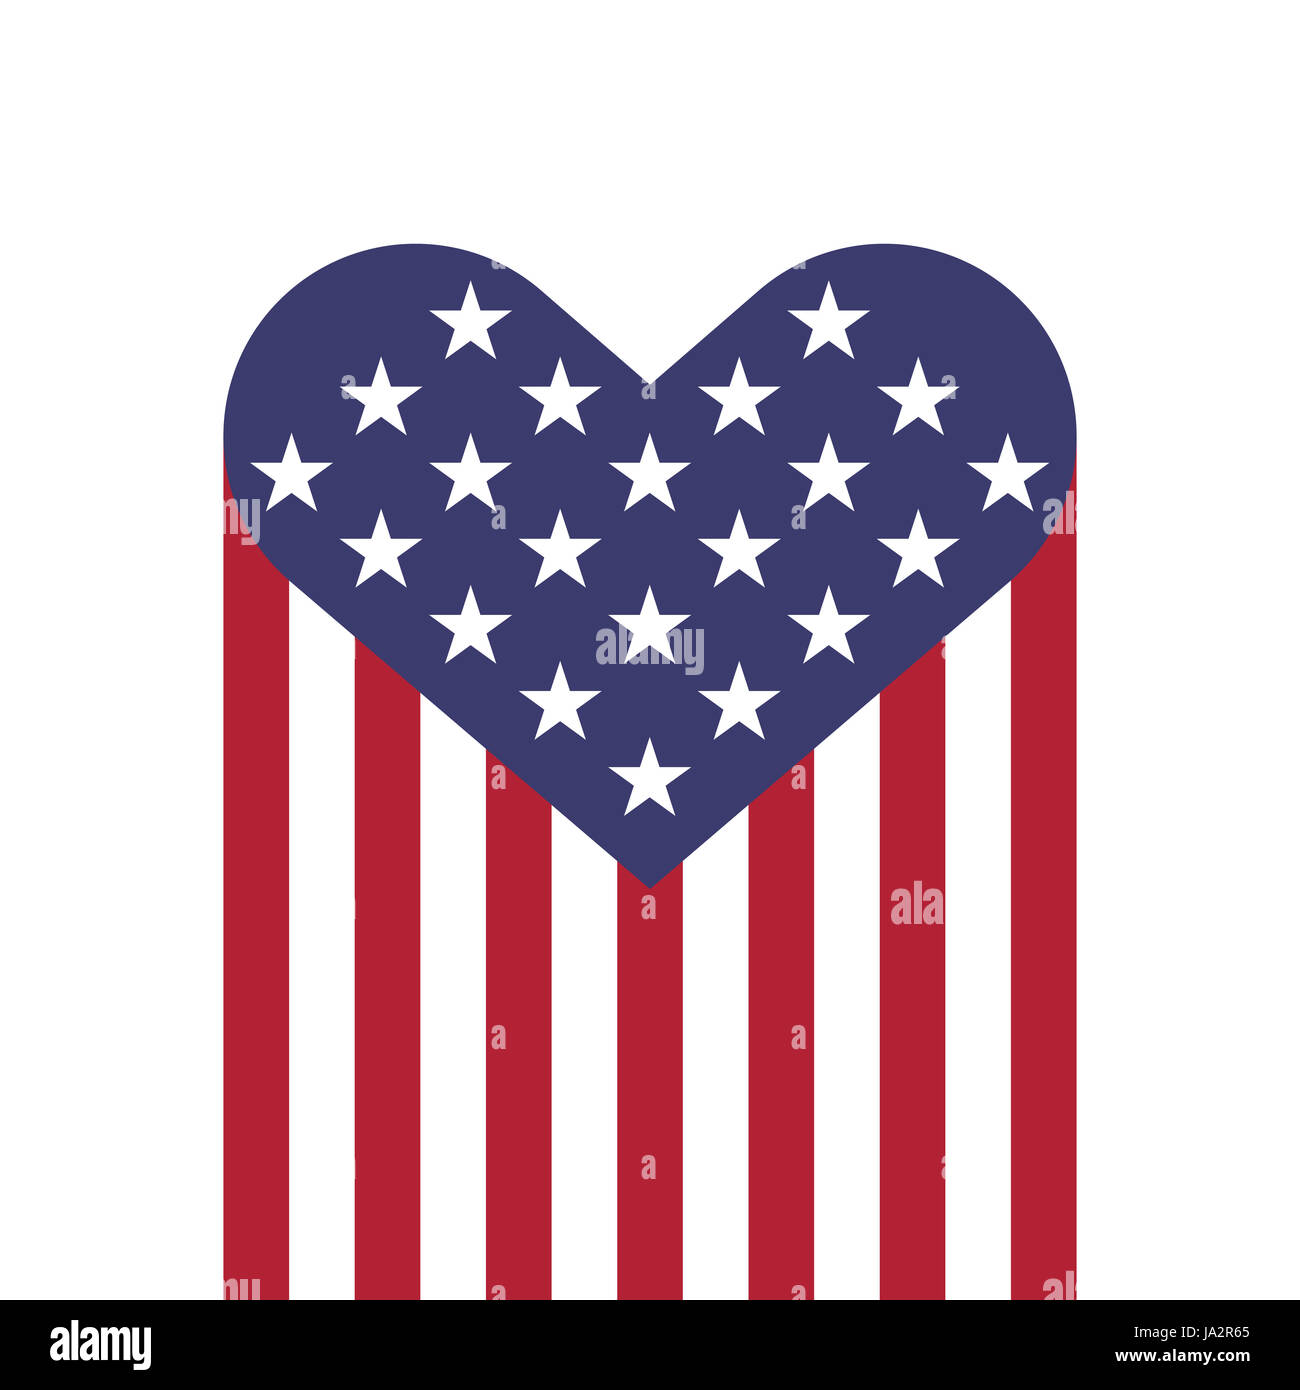 Drapeau USA forme coeurs vector illustration pour le jour de l'indépendance, Memorial Day ou d'autres Banque D'Images